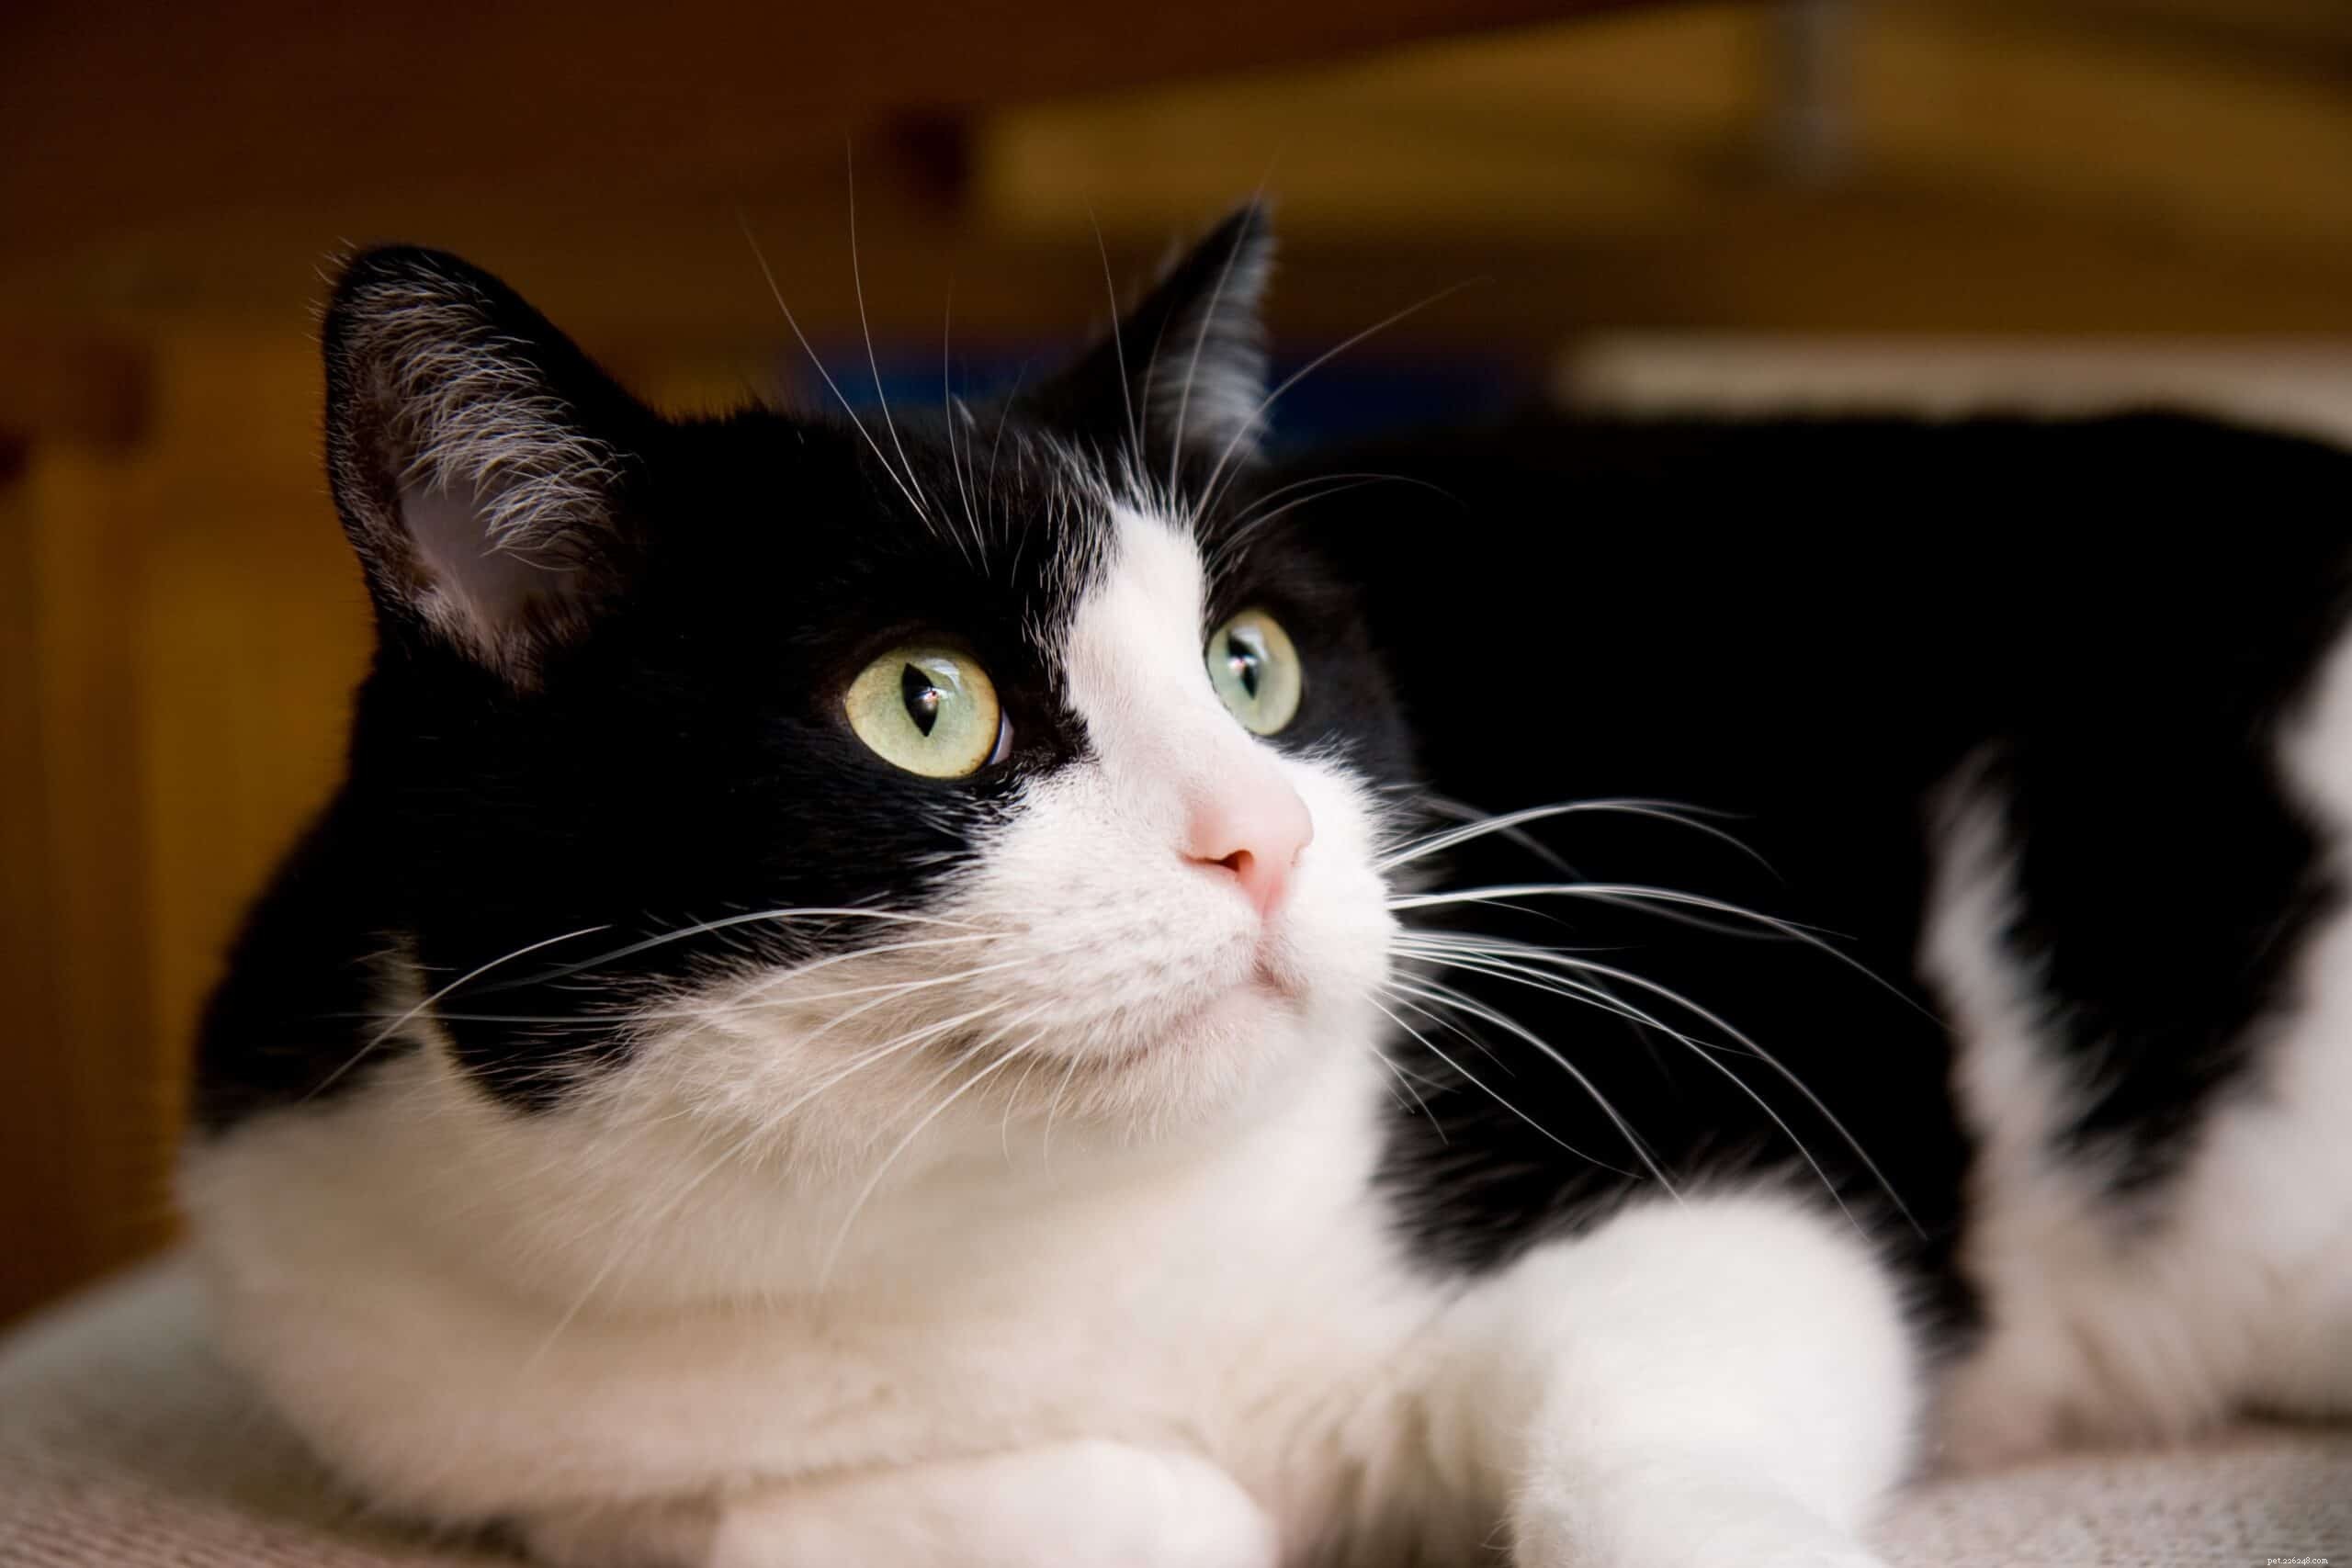 Perché i gatti hanno paura dei rumori forti?